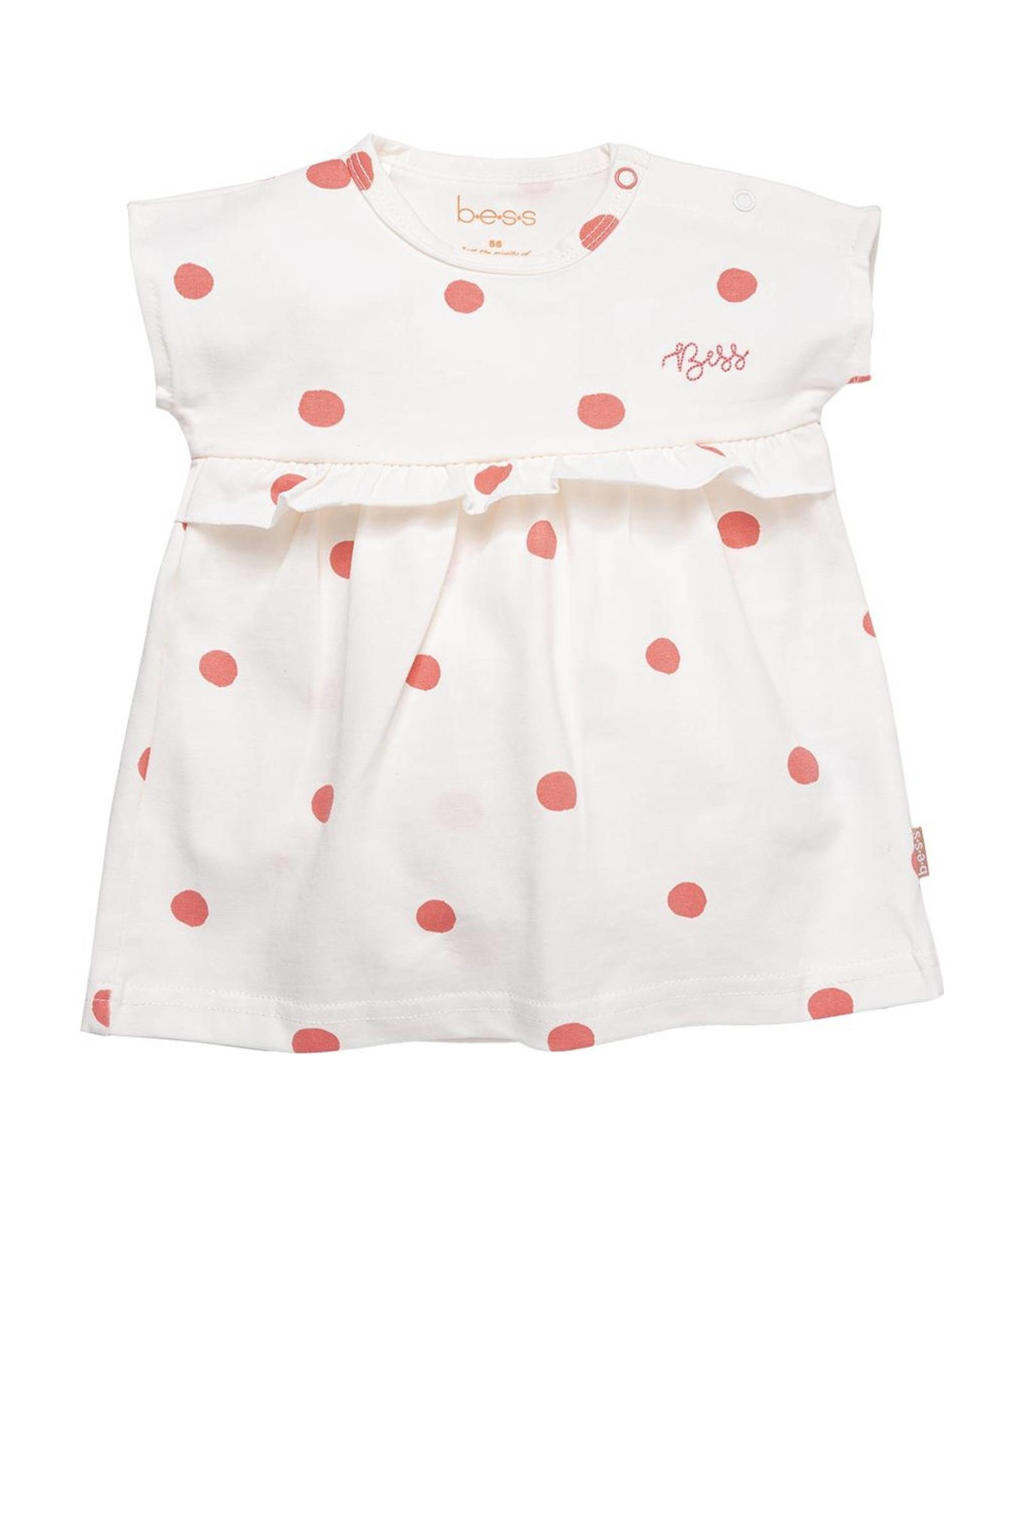 Ecru, off white en rode meisjes B*E*S*S baby jurk met ruches van stretchkatoen met stippenprint, korte mouwen en ronde hals